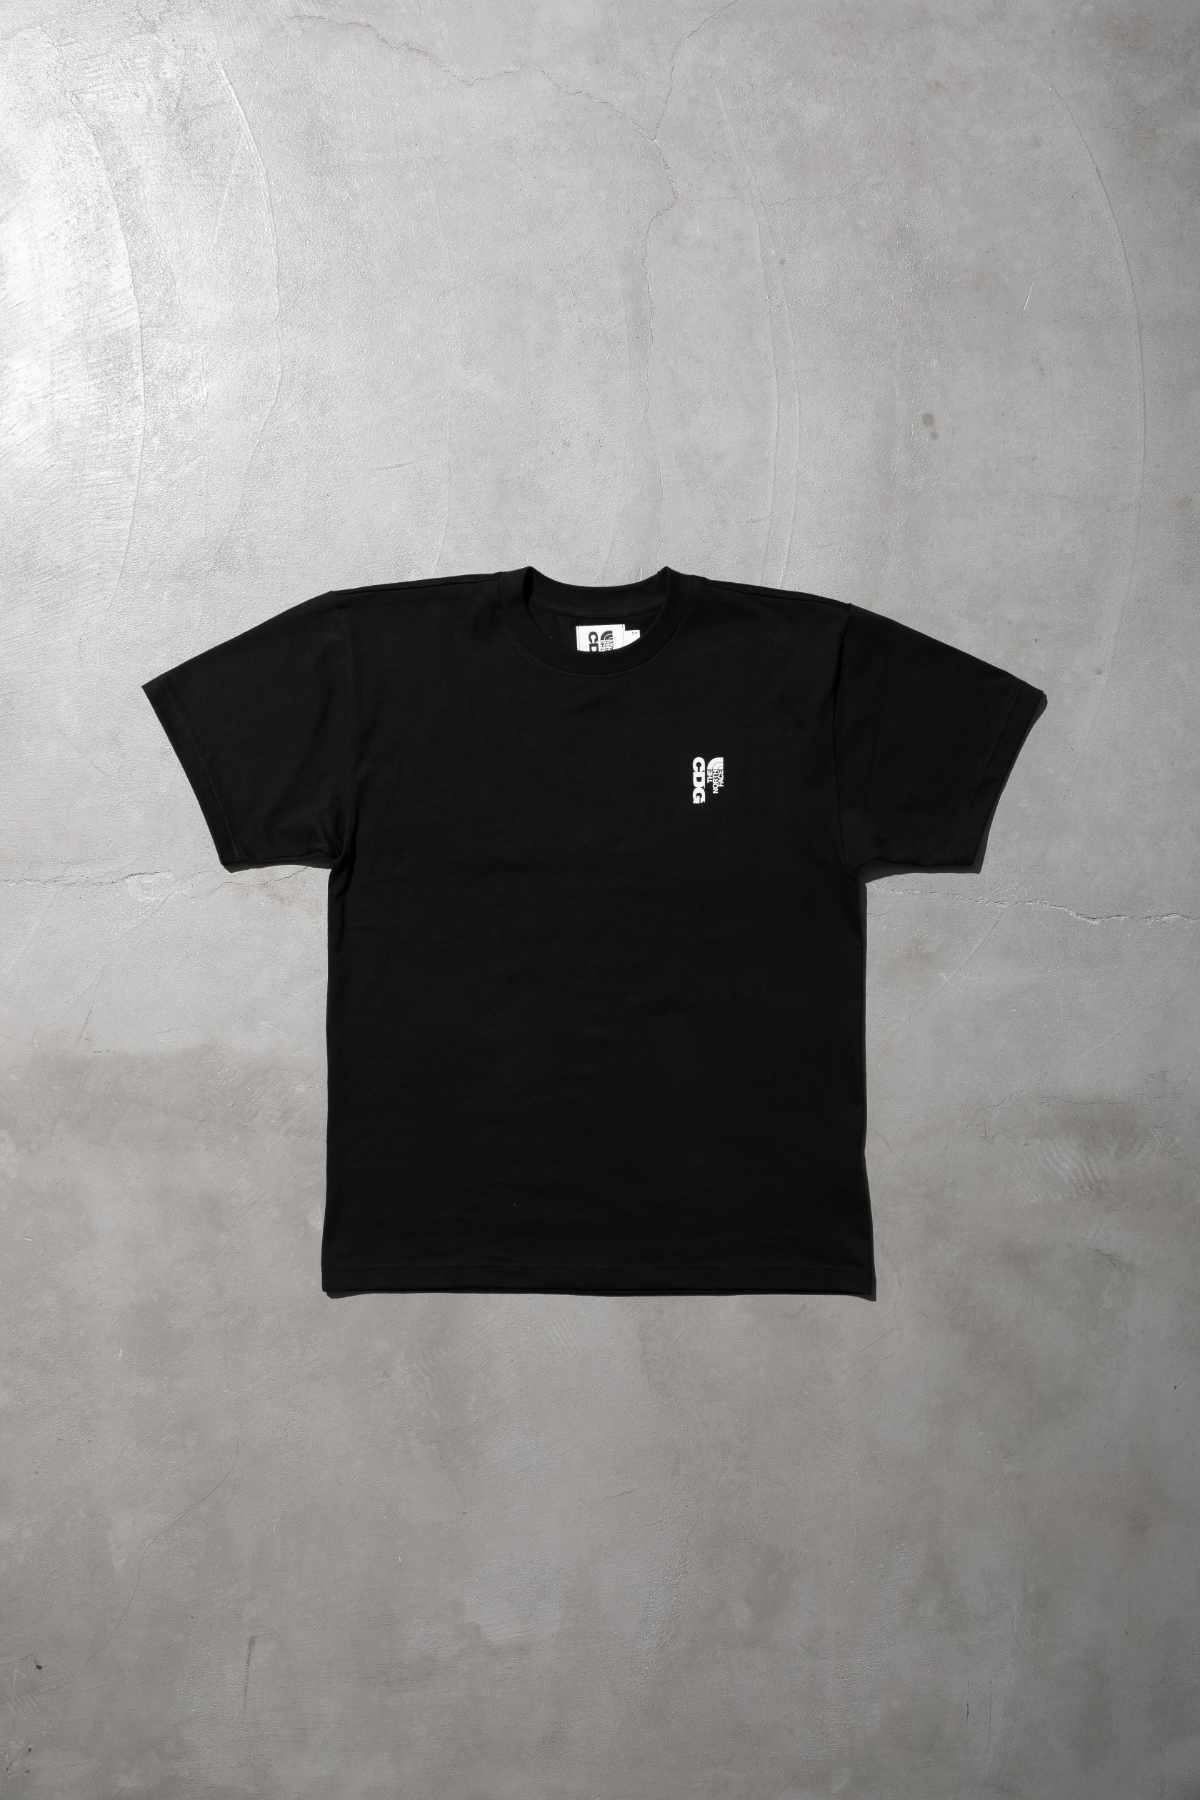 The CDG x TNF collab's black T-shirt